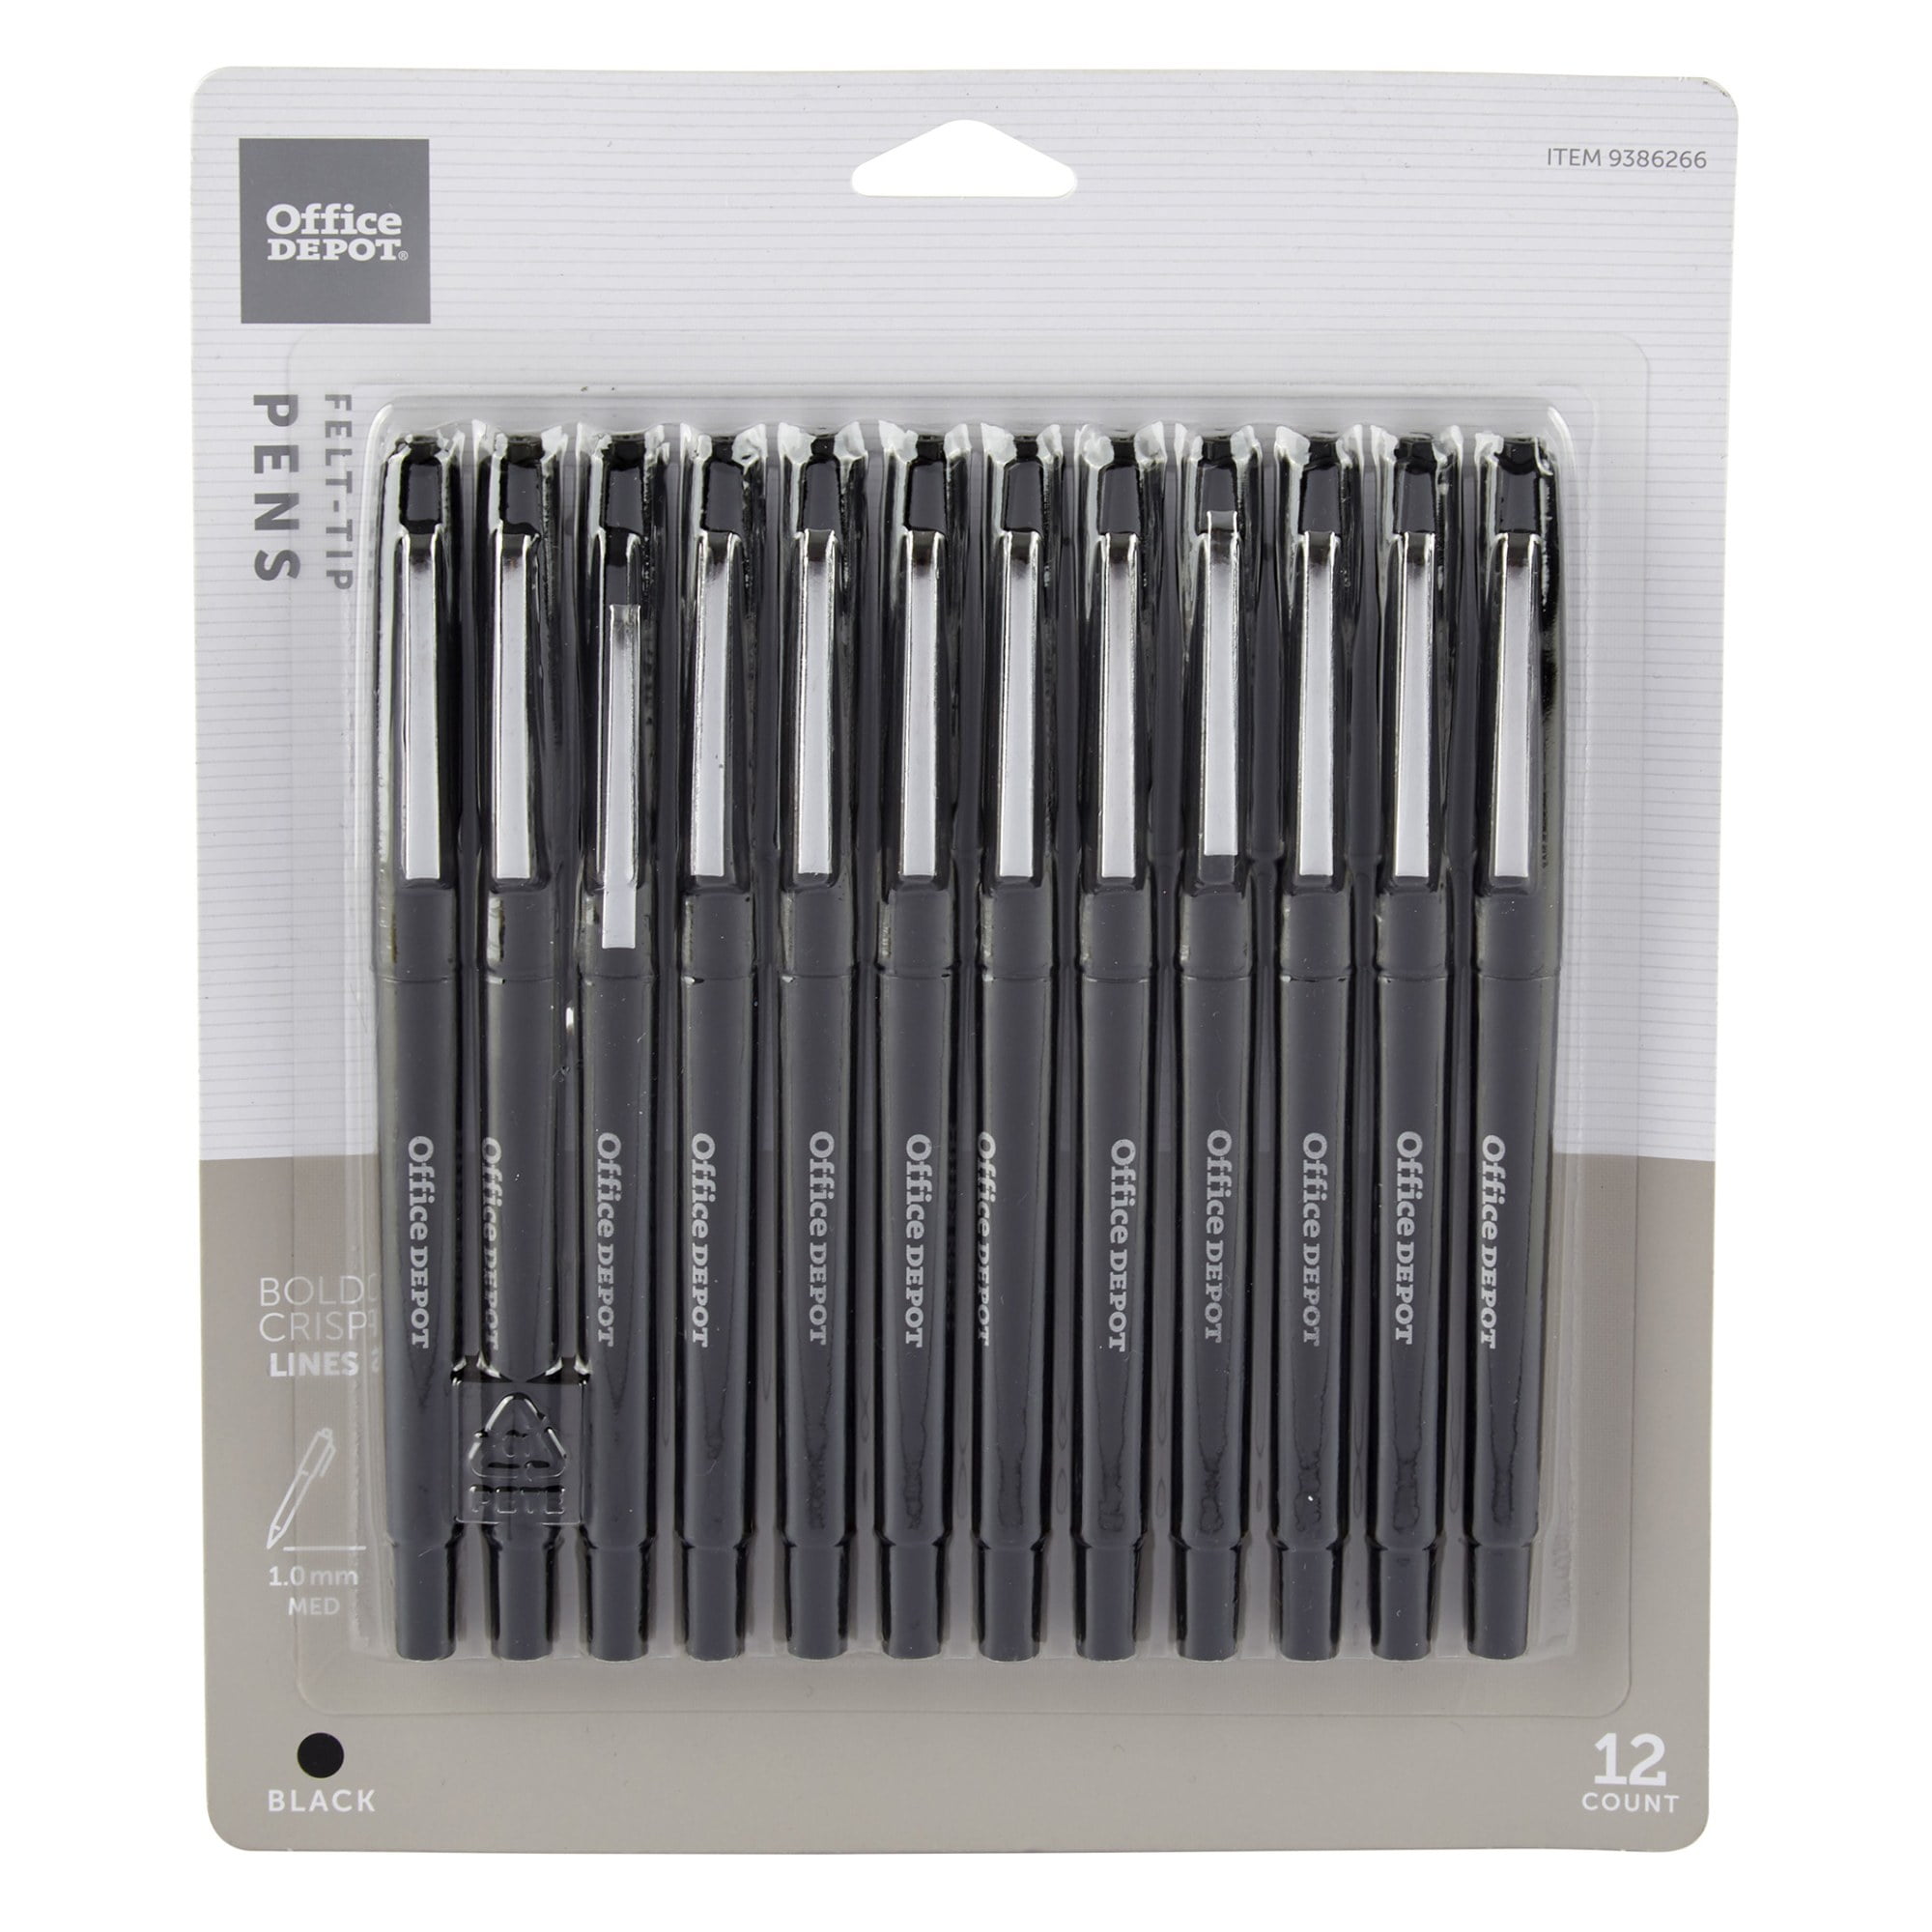 Micron 6 Color Pens Set :: Fiber Tip Pens :: Pens :: OFFICE